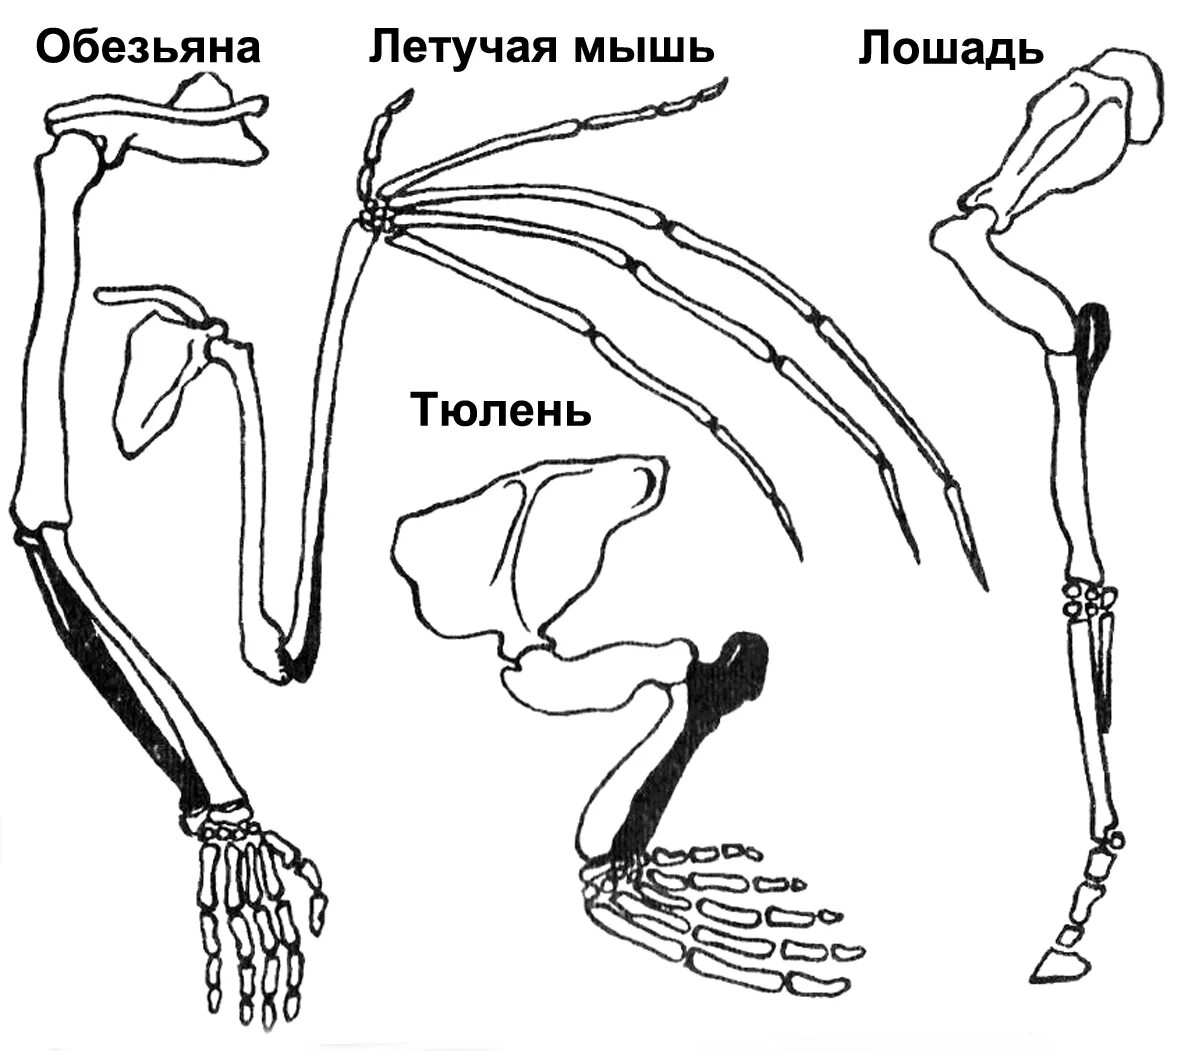 Скелет пояса передних конечностей млекопитающих. Скелет пояса задних конечностей млекопитающих. Пояс задних конечностей у млекопитающих. Строение задних конечностей млекопитающих. Строение скелета верхней конечности позвоночных животных.